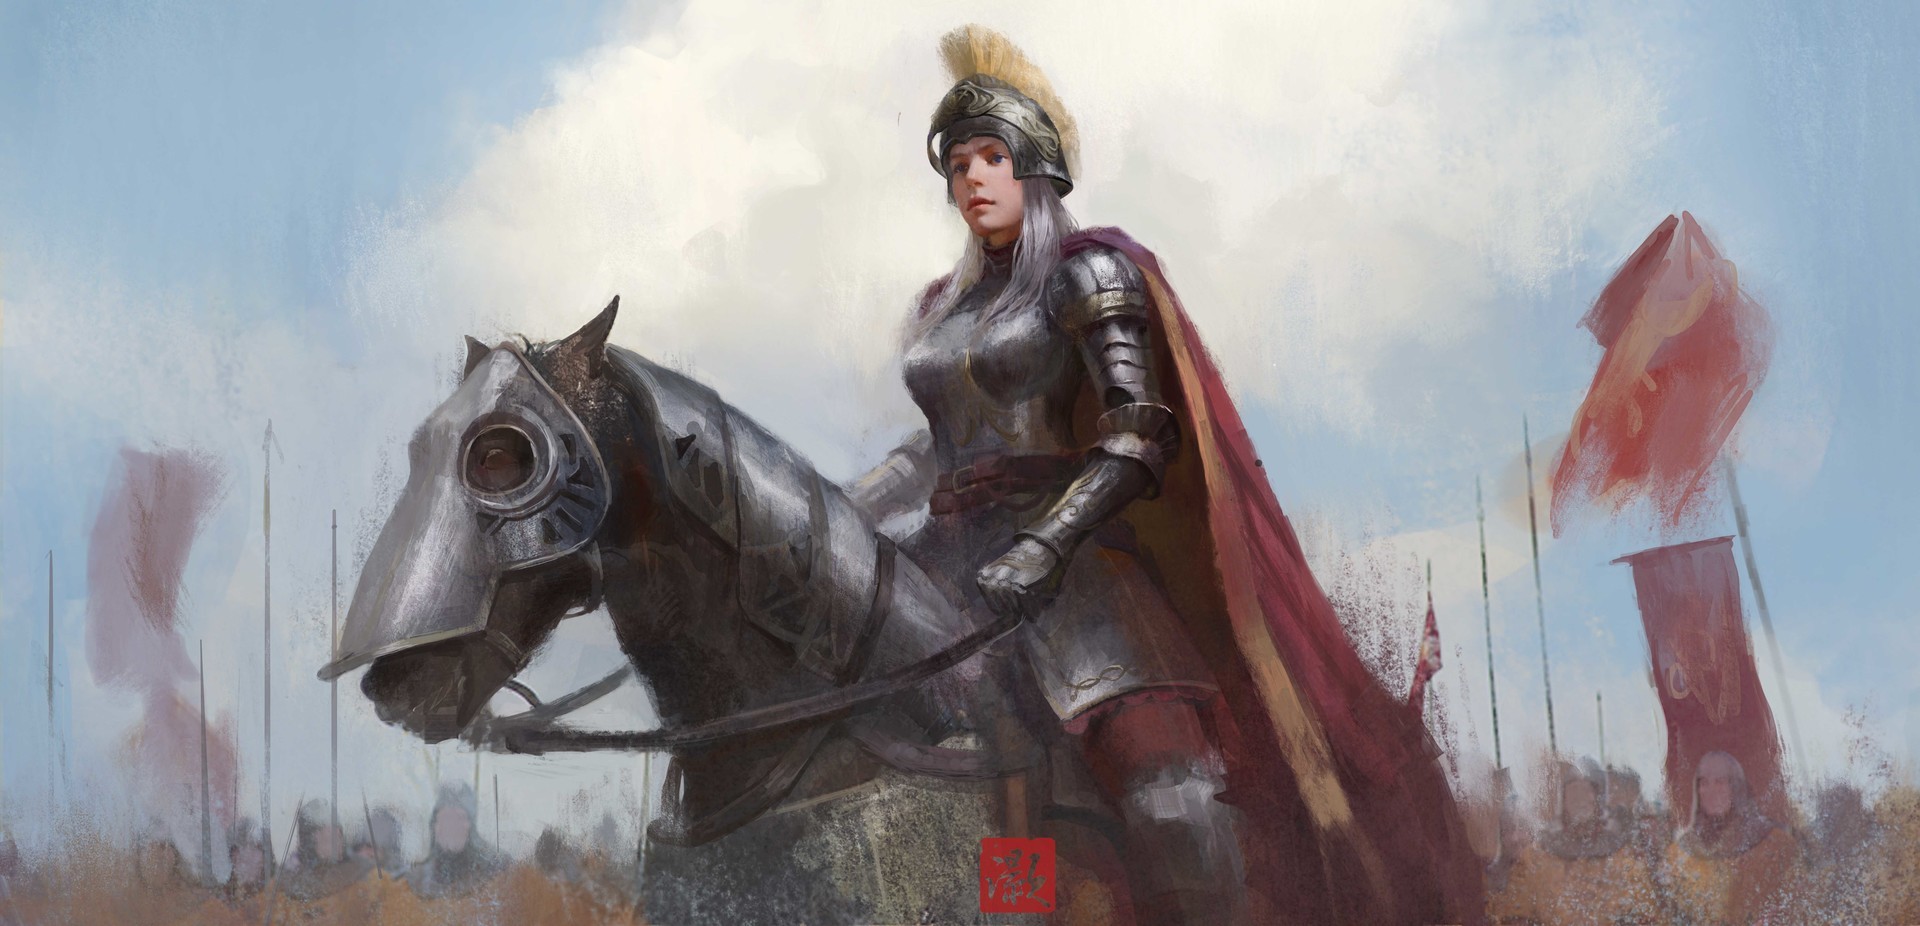 General 1920x926 fantasy art warrior armor fantasy girl helmet